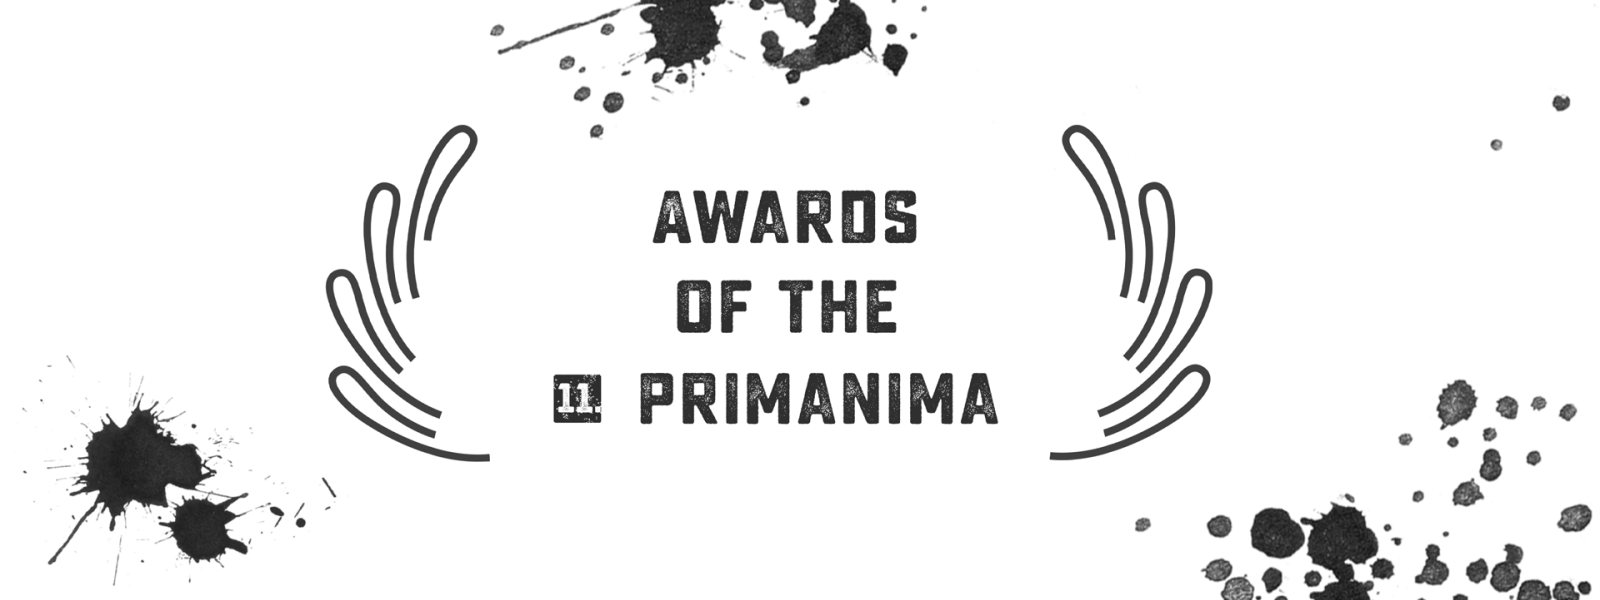 Award-Winners of the 11th Primanima